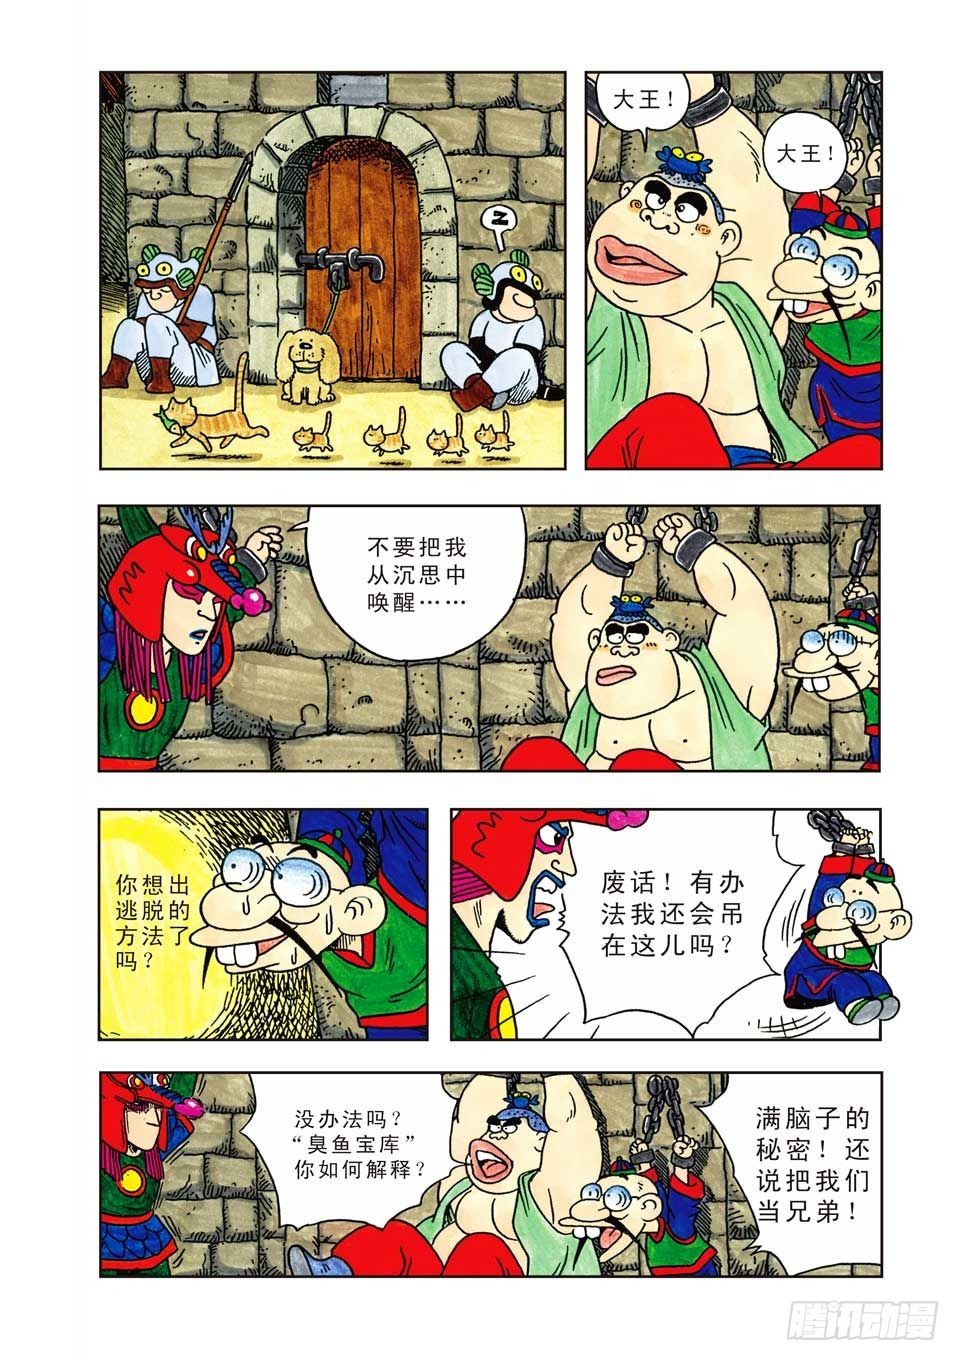 乌龙院爆笑漫画系列七鲜鱼丸 - 第6集 - 5